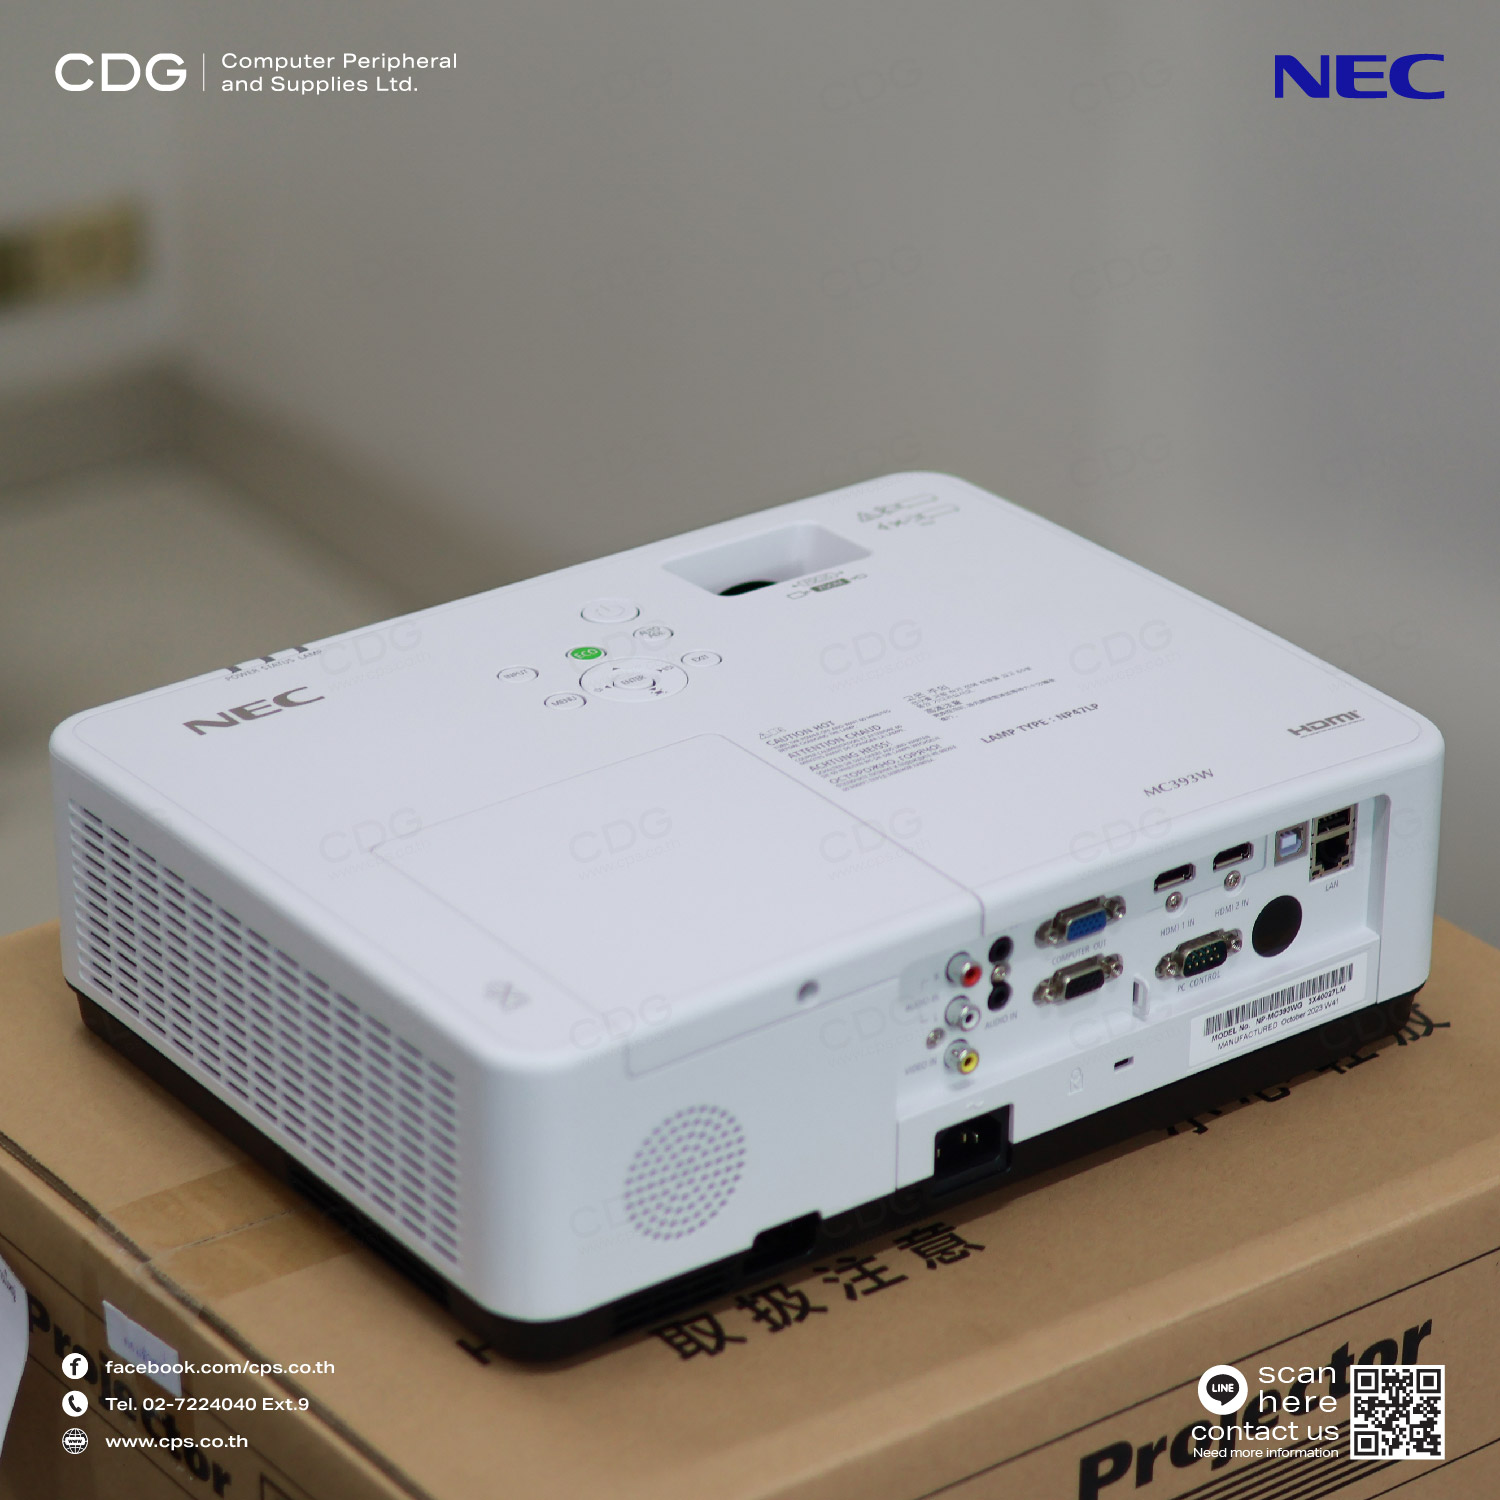 Portable Projector NEC MC393WG